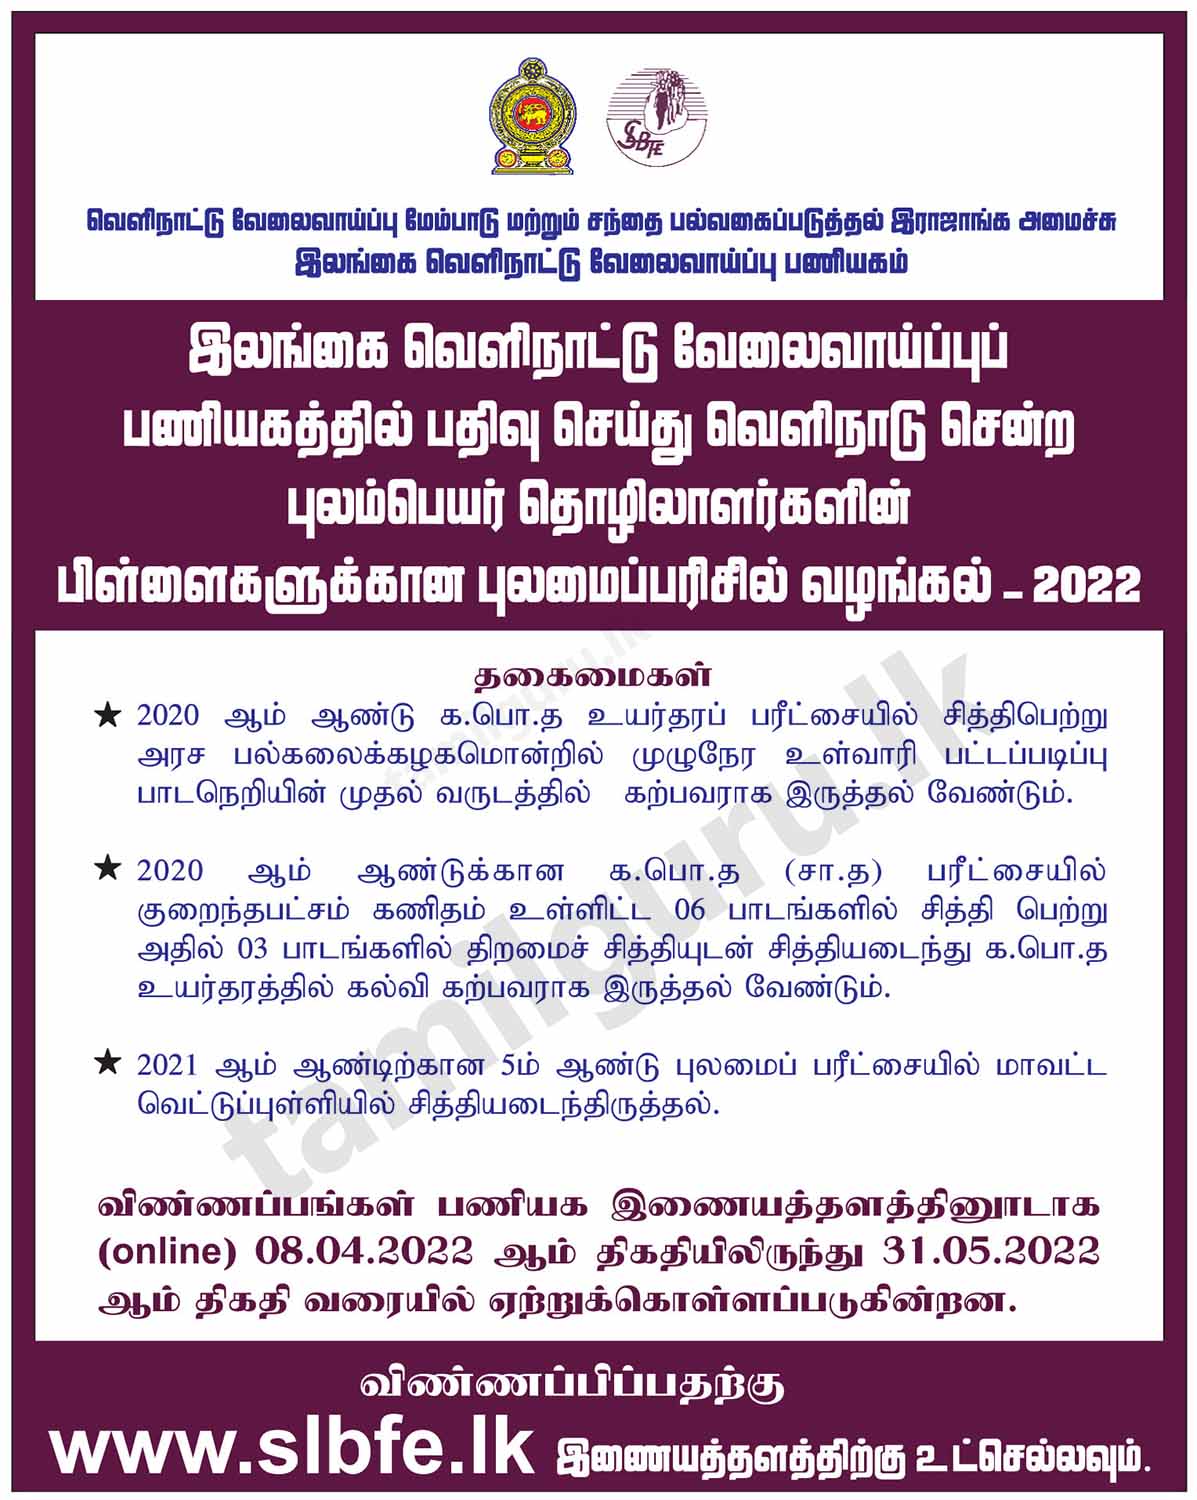 இலங்கை வெளி நாட்டு வேலைவாய்ப்புப் பணியகத்தில் பதிவு செய்து வெளிநாடு சென்ற புலம்பெயர் தொழிலாளர்களின் பிள்ளைகளுக்கான புலமைப்பரிசில் வழங்கல் - 2022 Scholarships for Migrant Workers' Children (2022) - Sri Lanka Bureau of Foreign Employment (SLBFE)